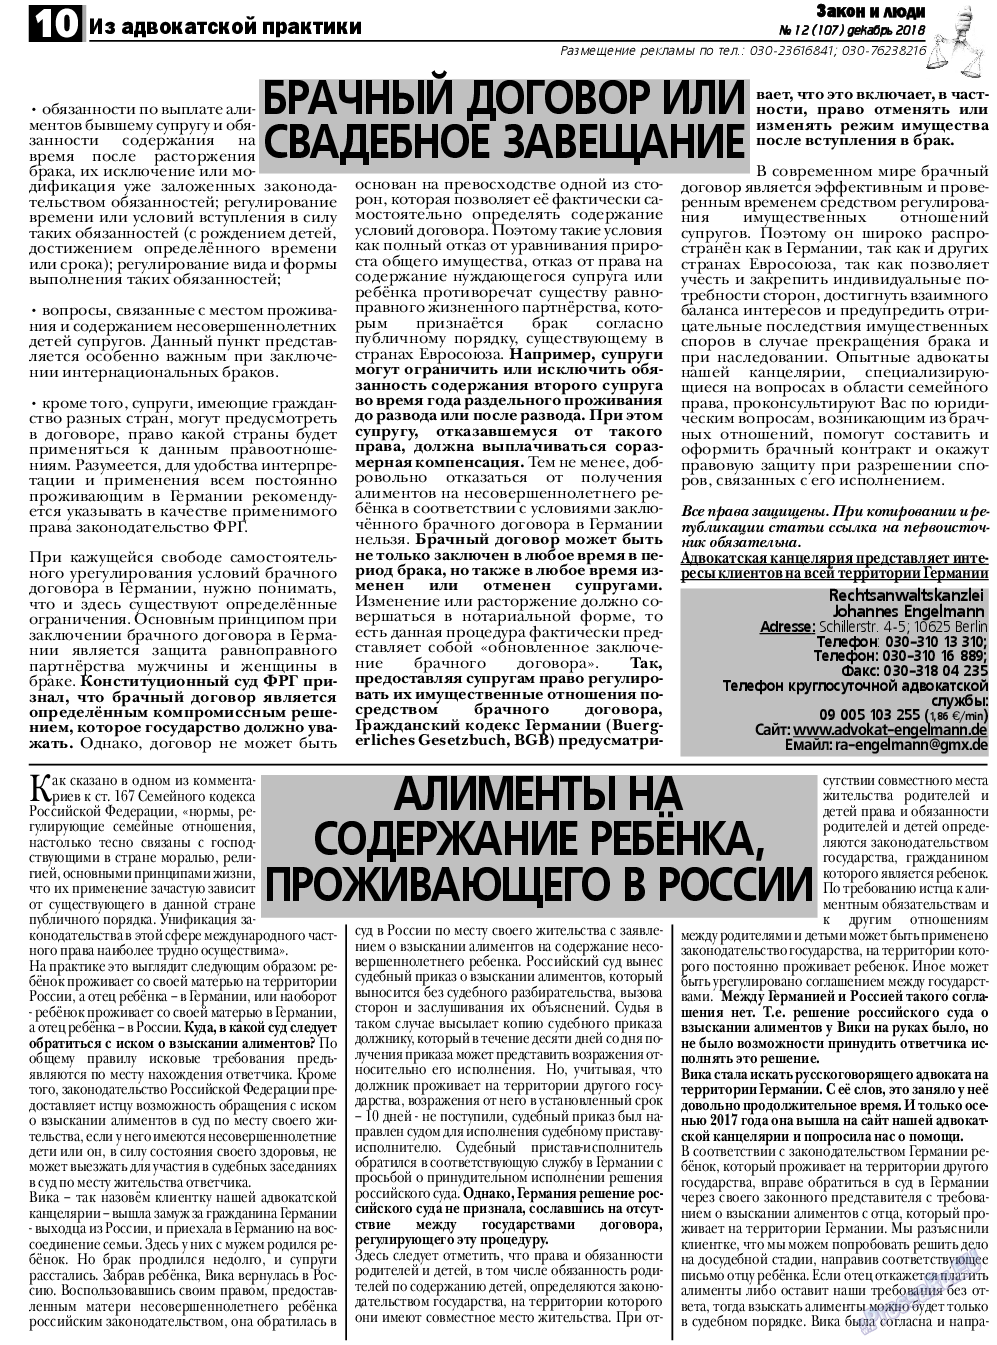 Закон и люди, газета. 2018 №12 стр.10